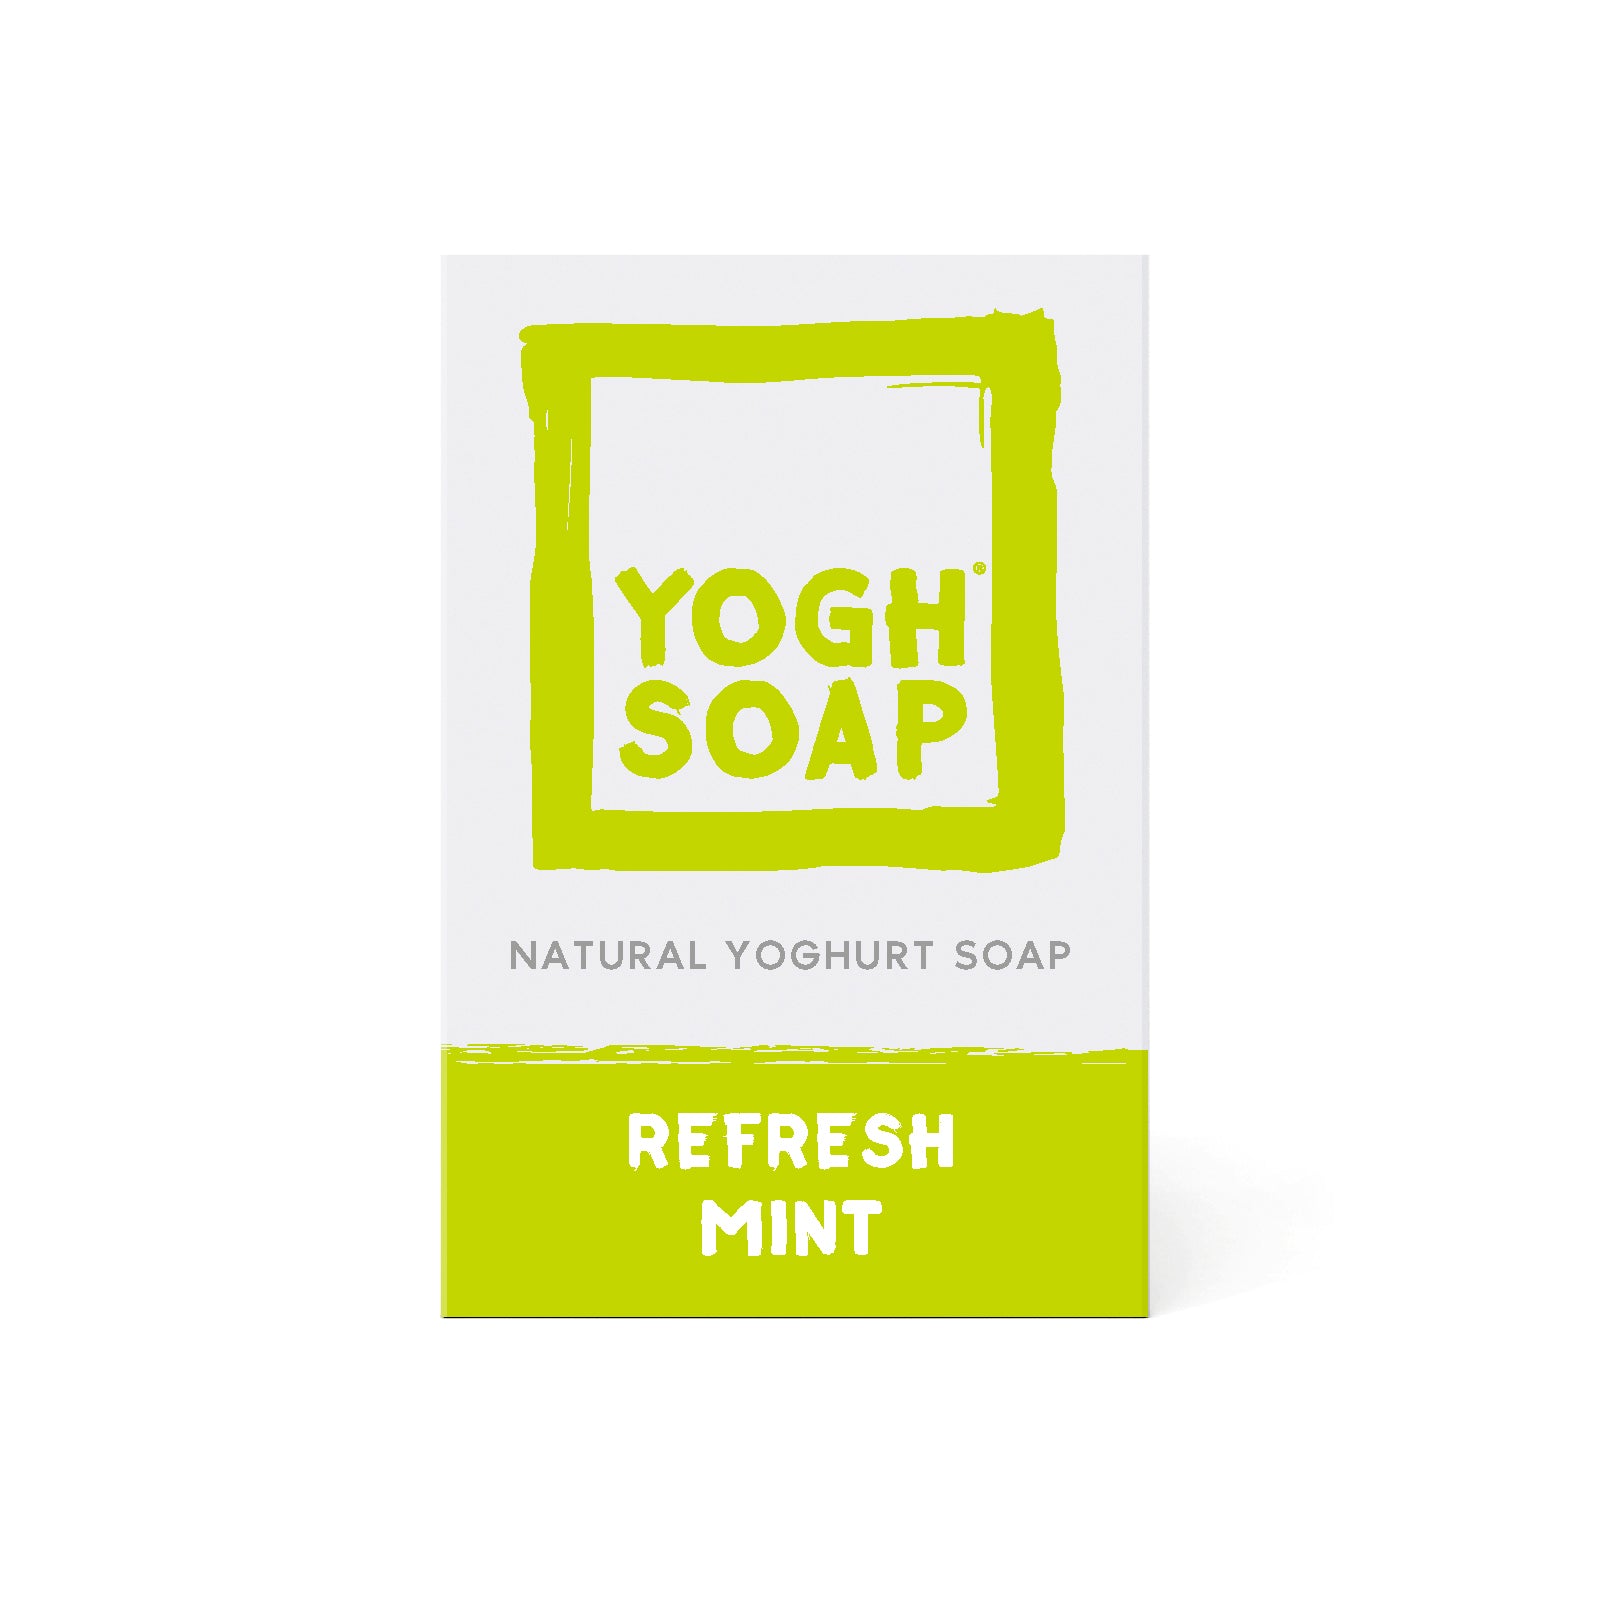 YOGHSOAP® Freshness Mint, 100g.